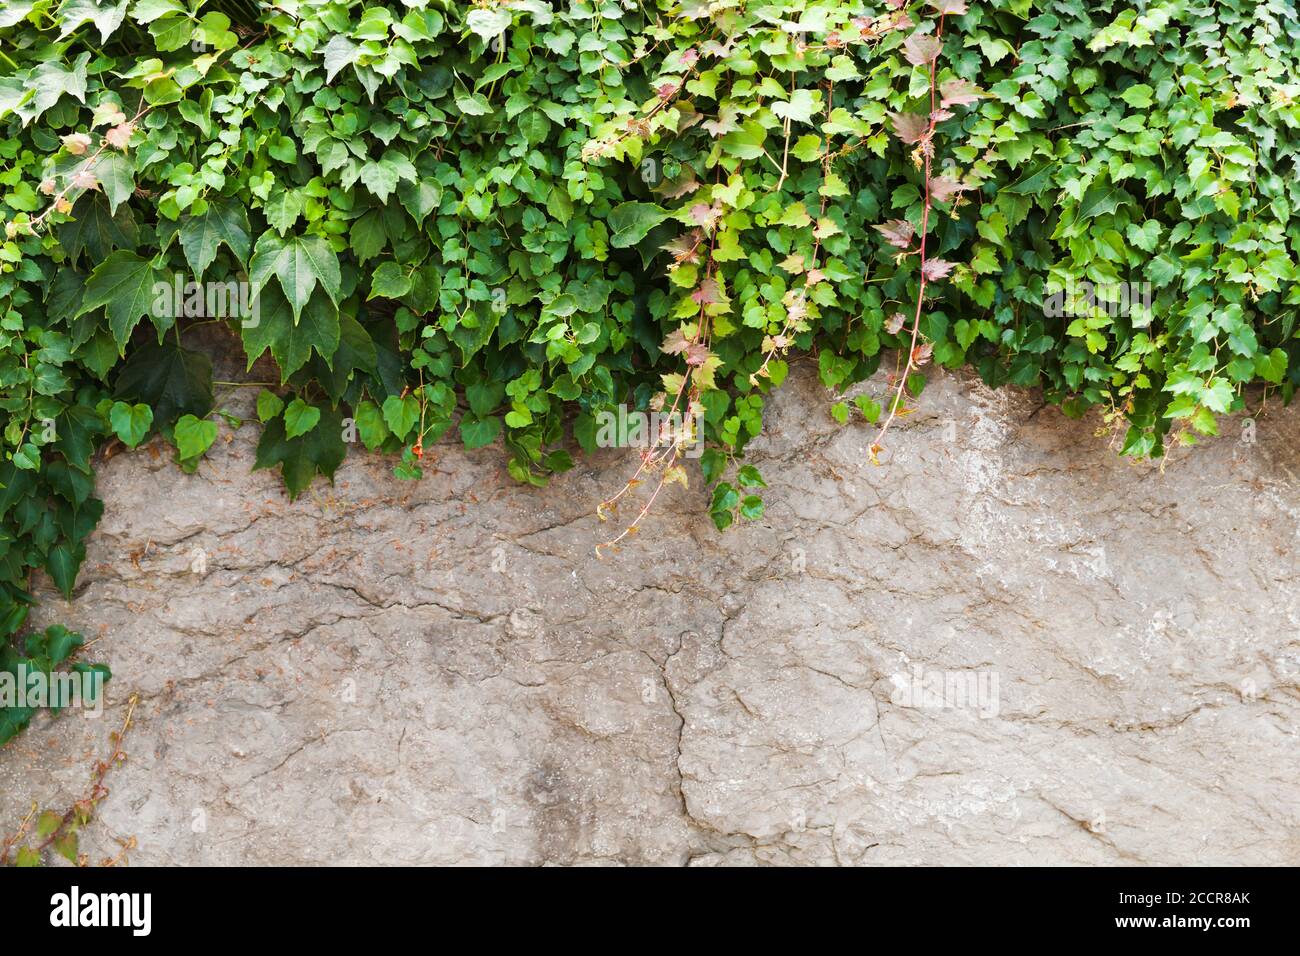 Grauer Stein Gartenzaun und dekorative grüne Rebe Pflanze wächst darüber, Hintergrund Foto Textur Stockfoto